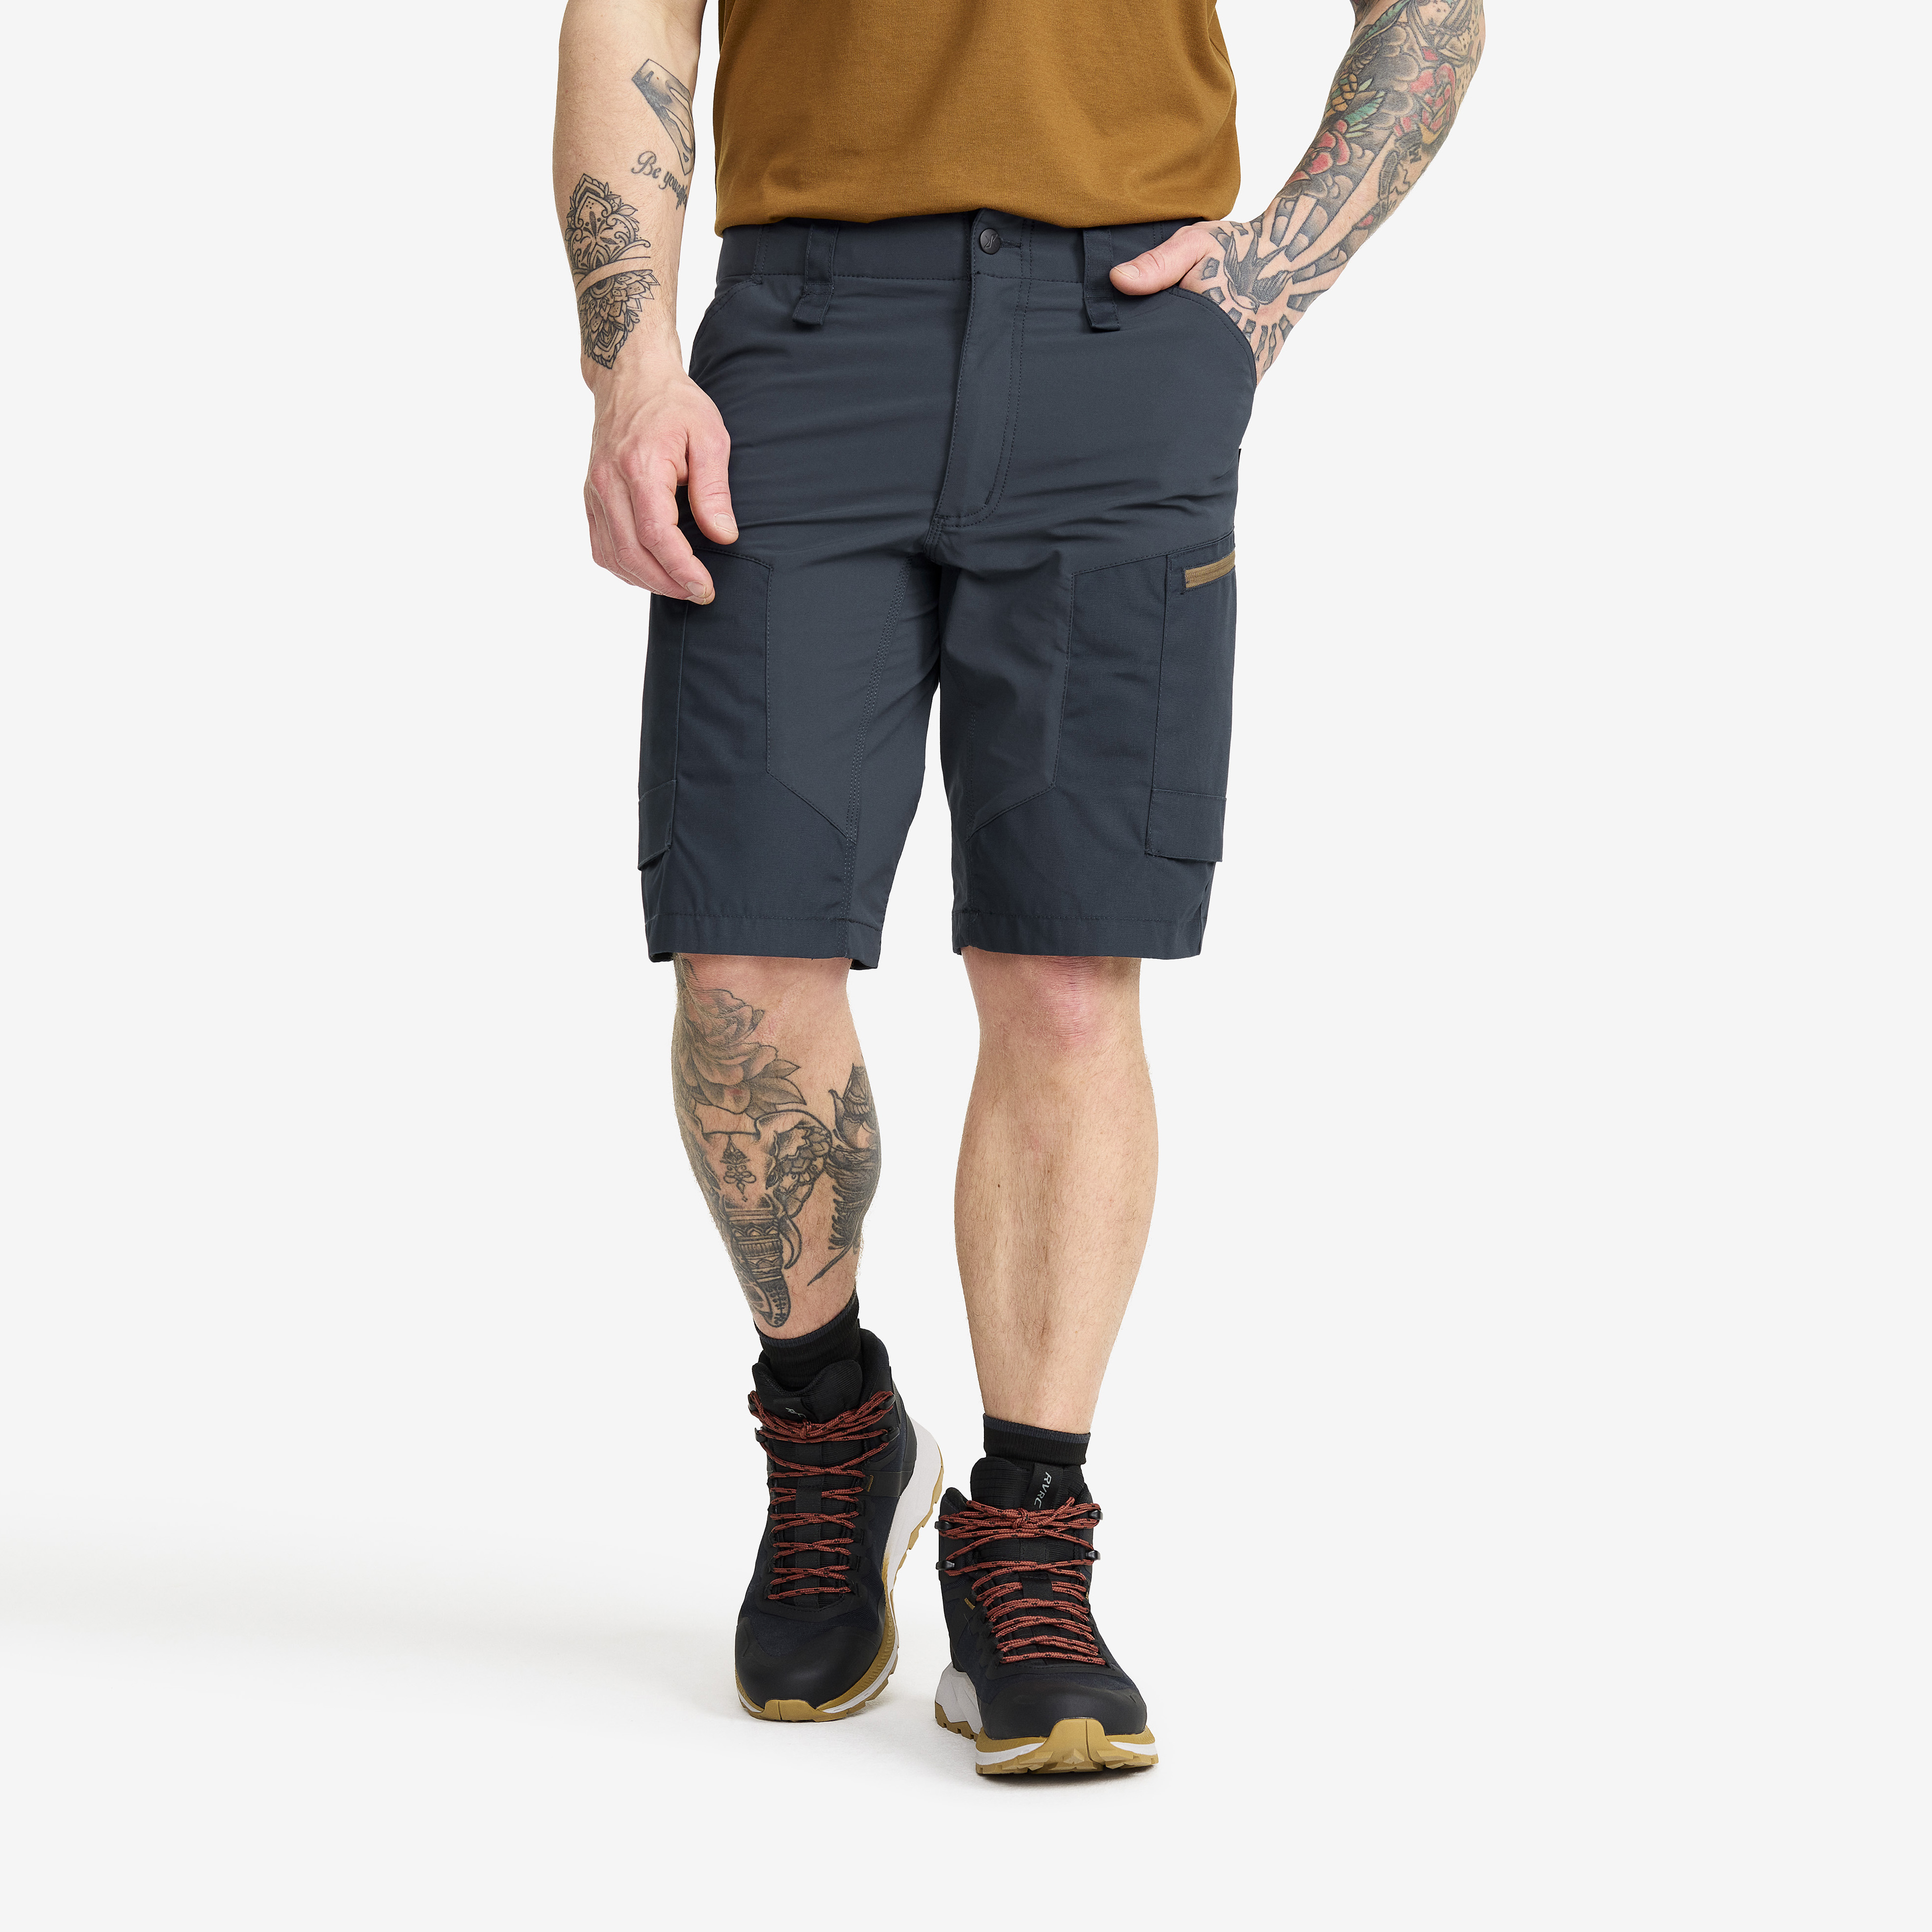 RVRC GP Shorts – Herr – Blueberry Storlek:L – Byxor > Shorts